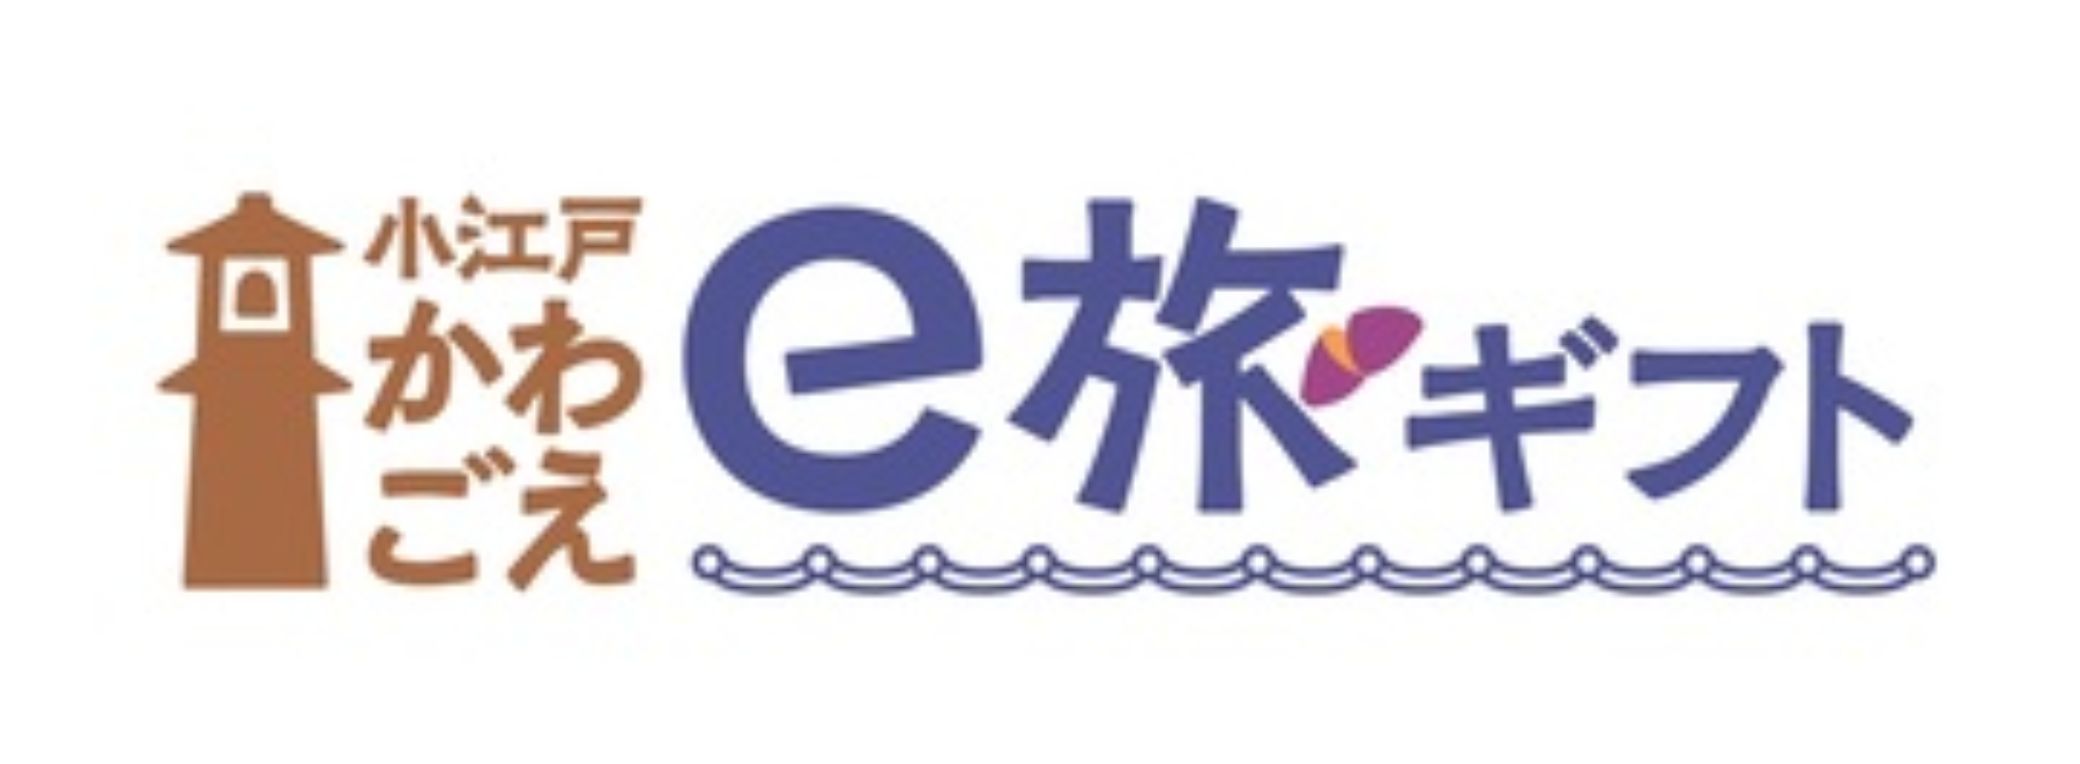 🌈Kleines Edo-Kawagoe-E-Reisegeschenk (Reisesteuerzahlung) als Besonderheit✨